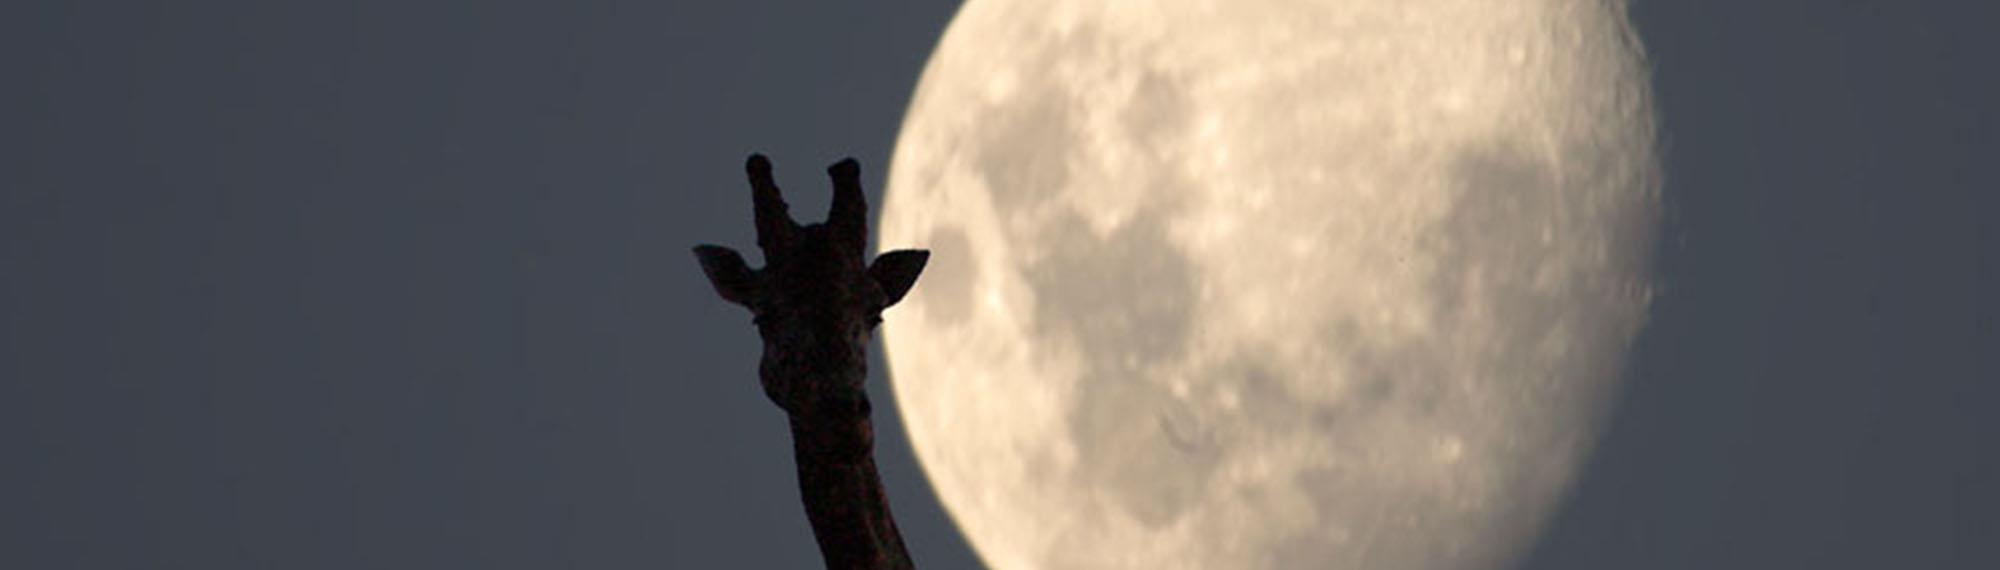 Giraffe silhouette against giant moon in night's sky